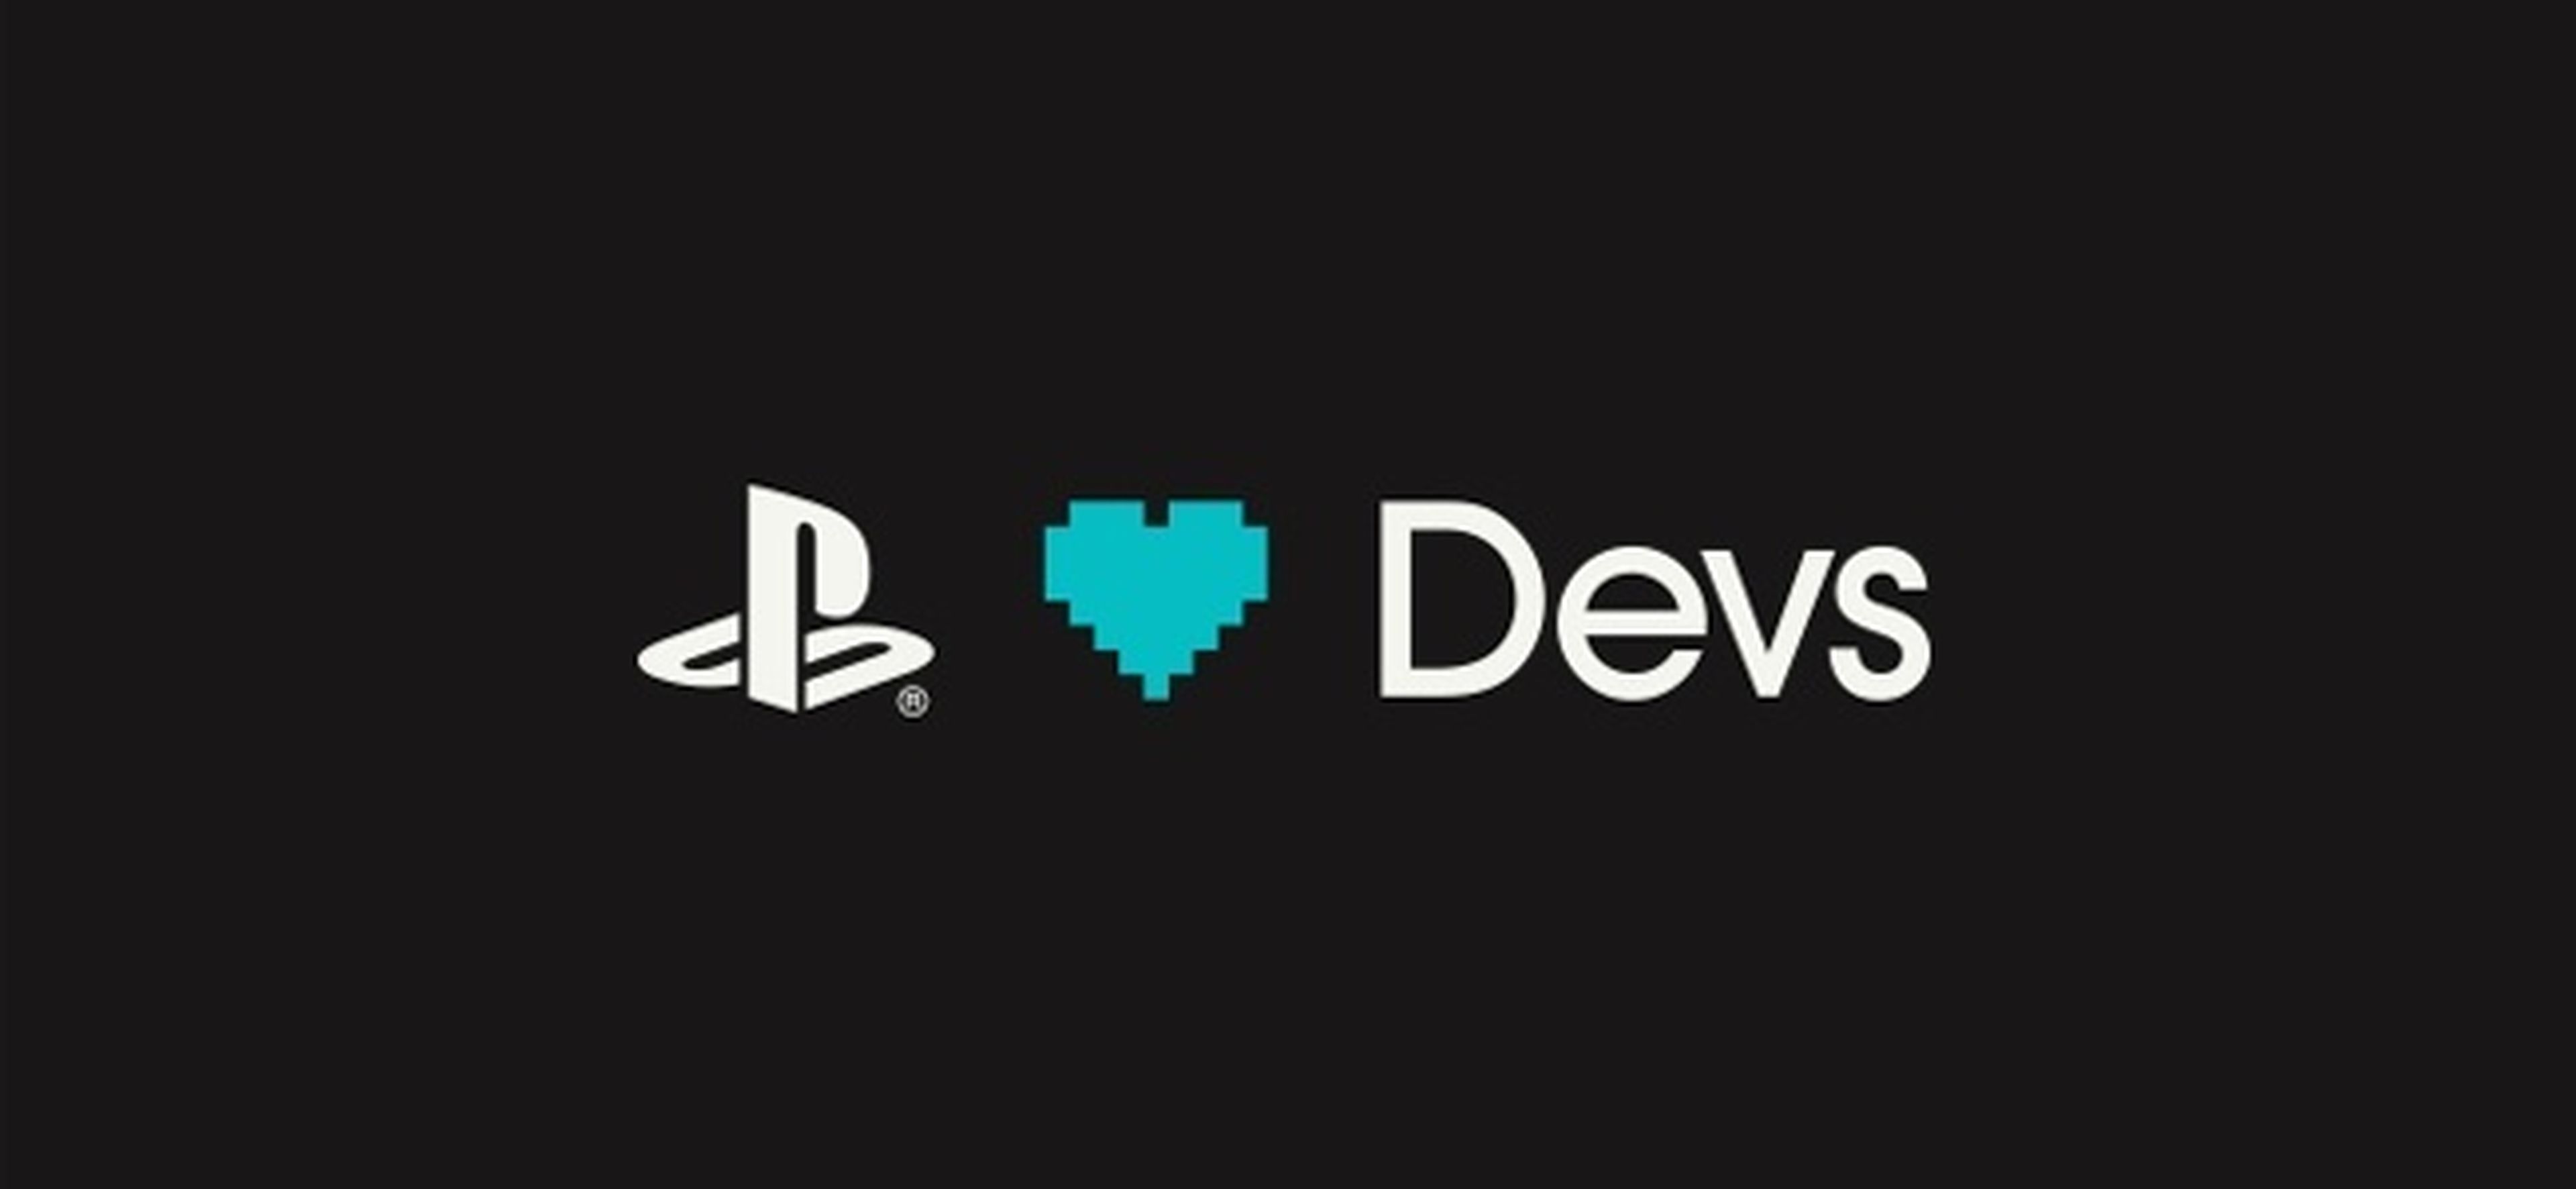 Sony facilita el trabajo a los desarrolladores indie en PS4